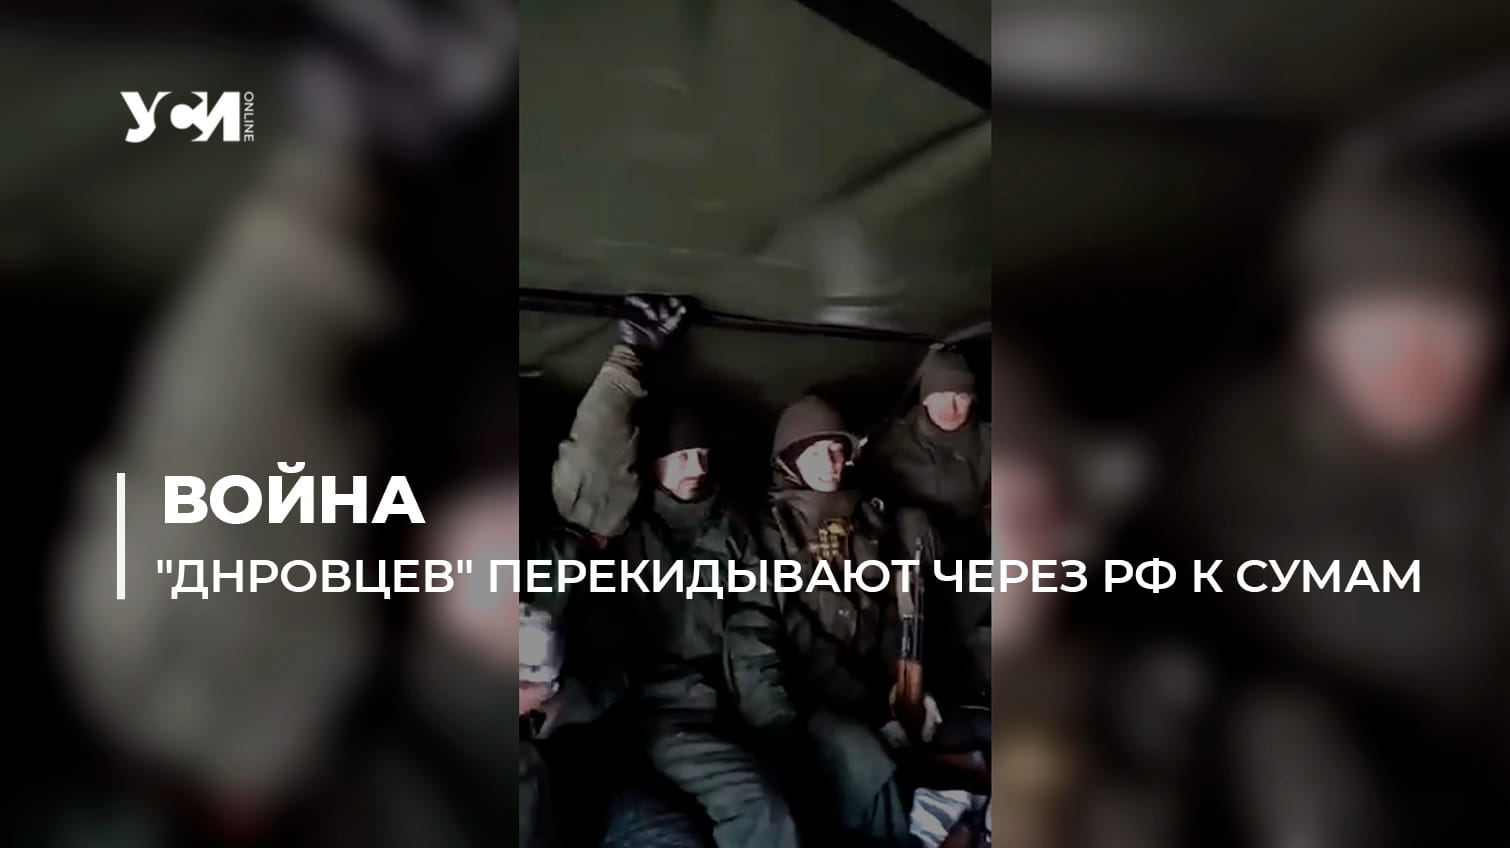 “ДНРовцев” перекидывают через РФ к Сумам (видео) «фото»